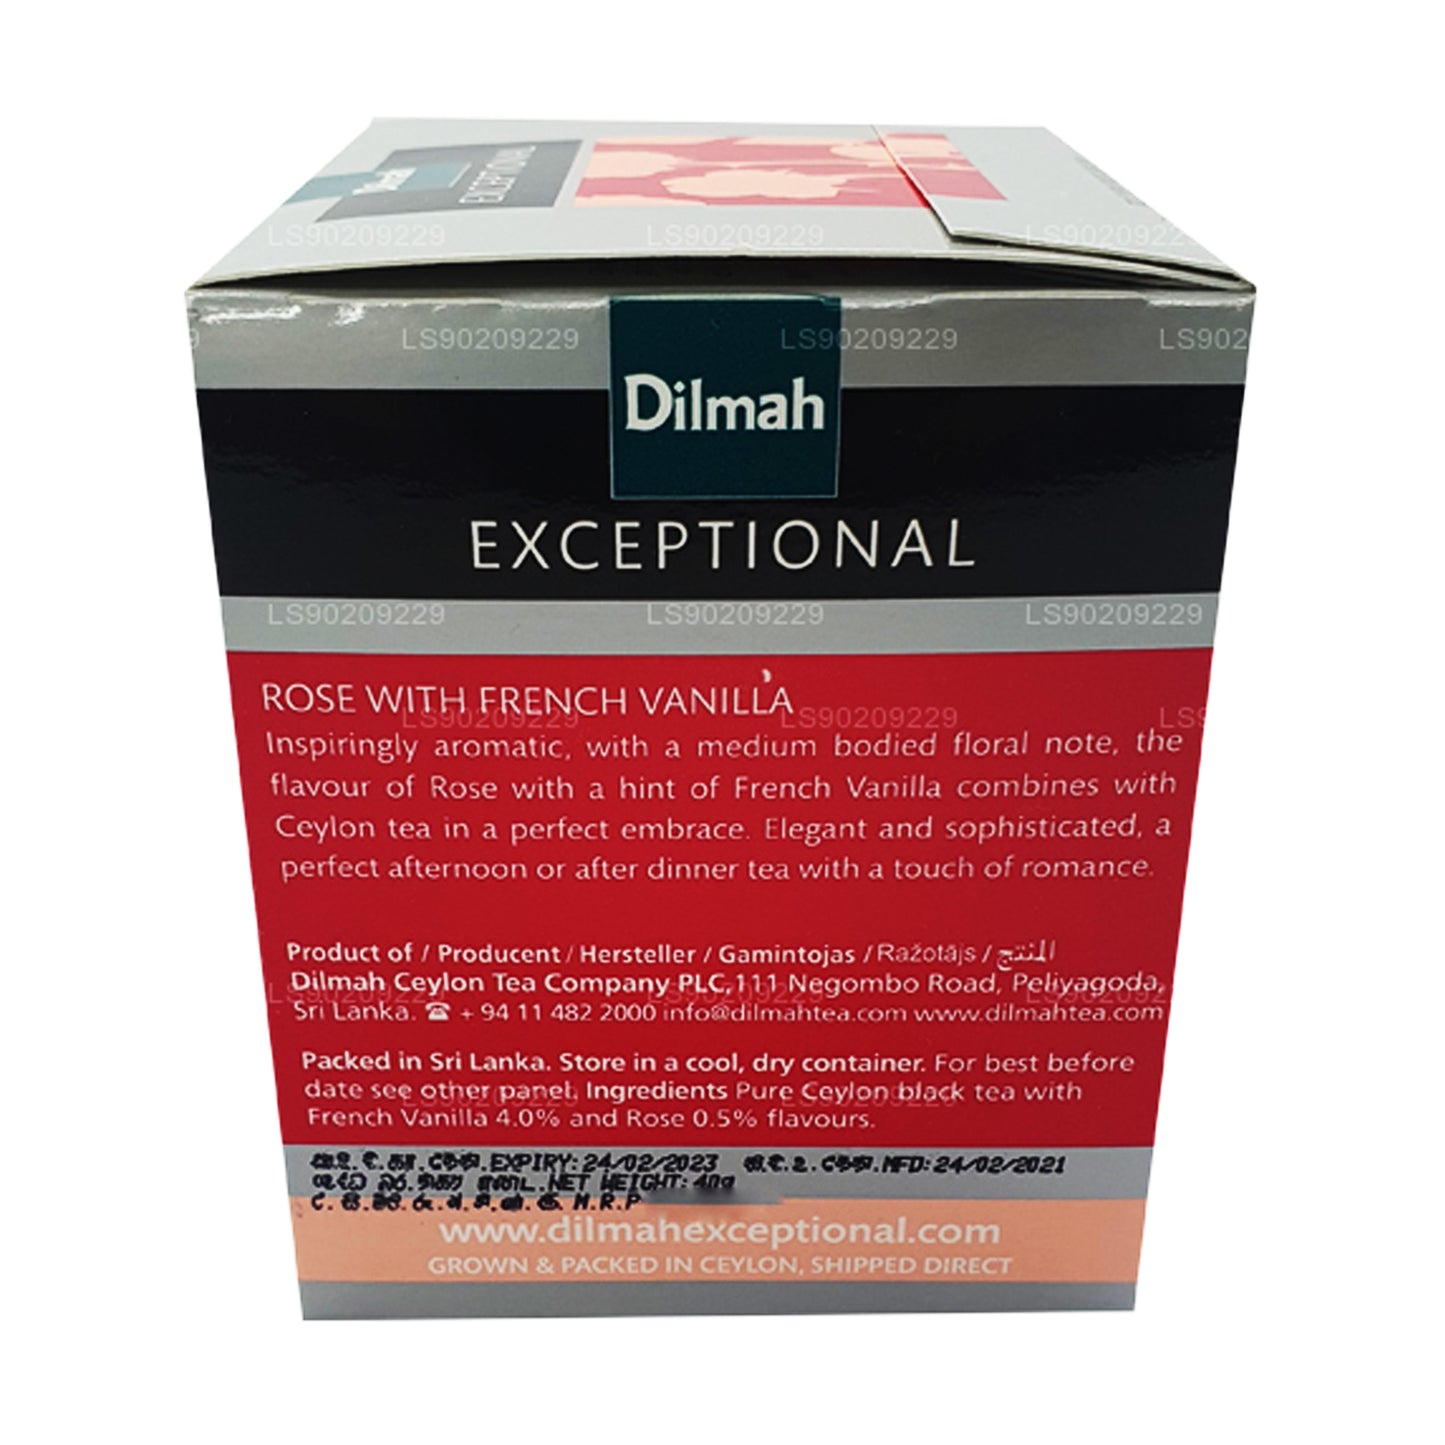 Dilmah Exceptional Rose con vainilla francesa (40 g), 20 bolsitas de té